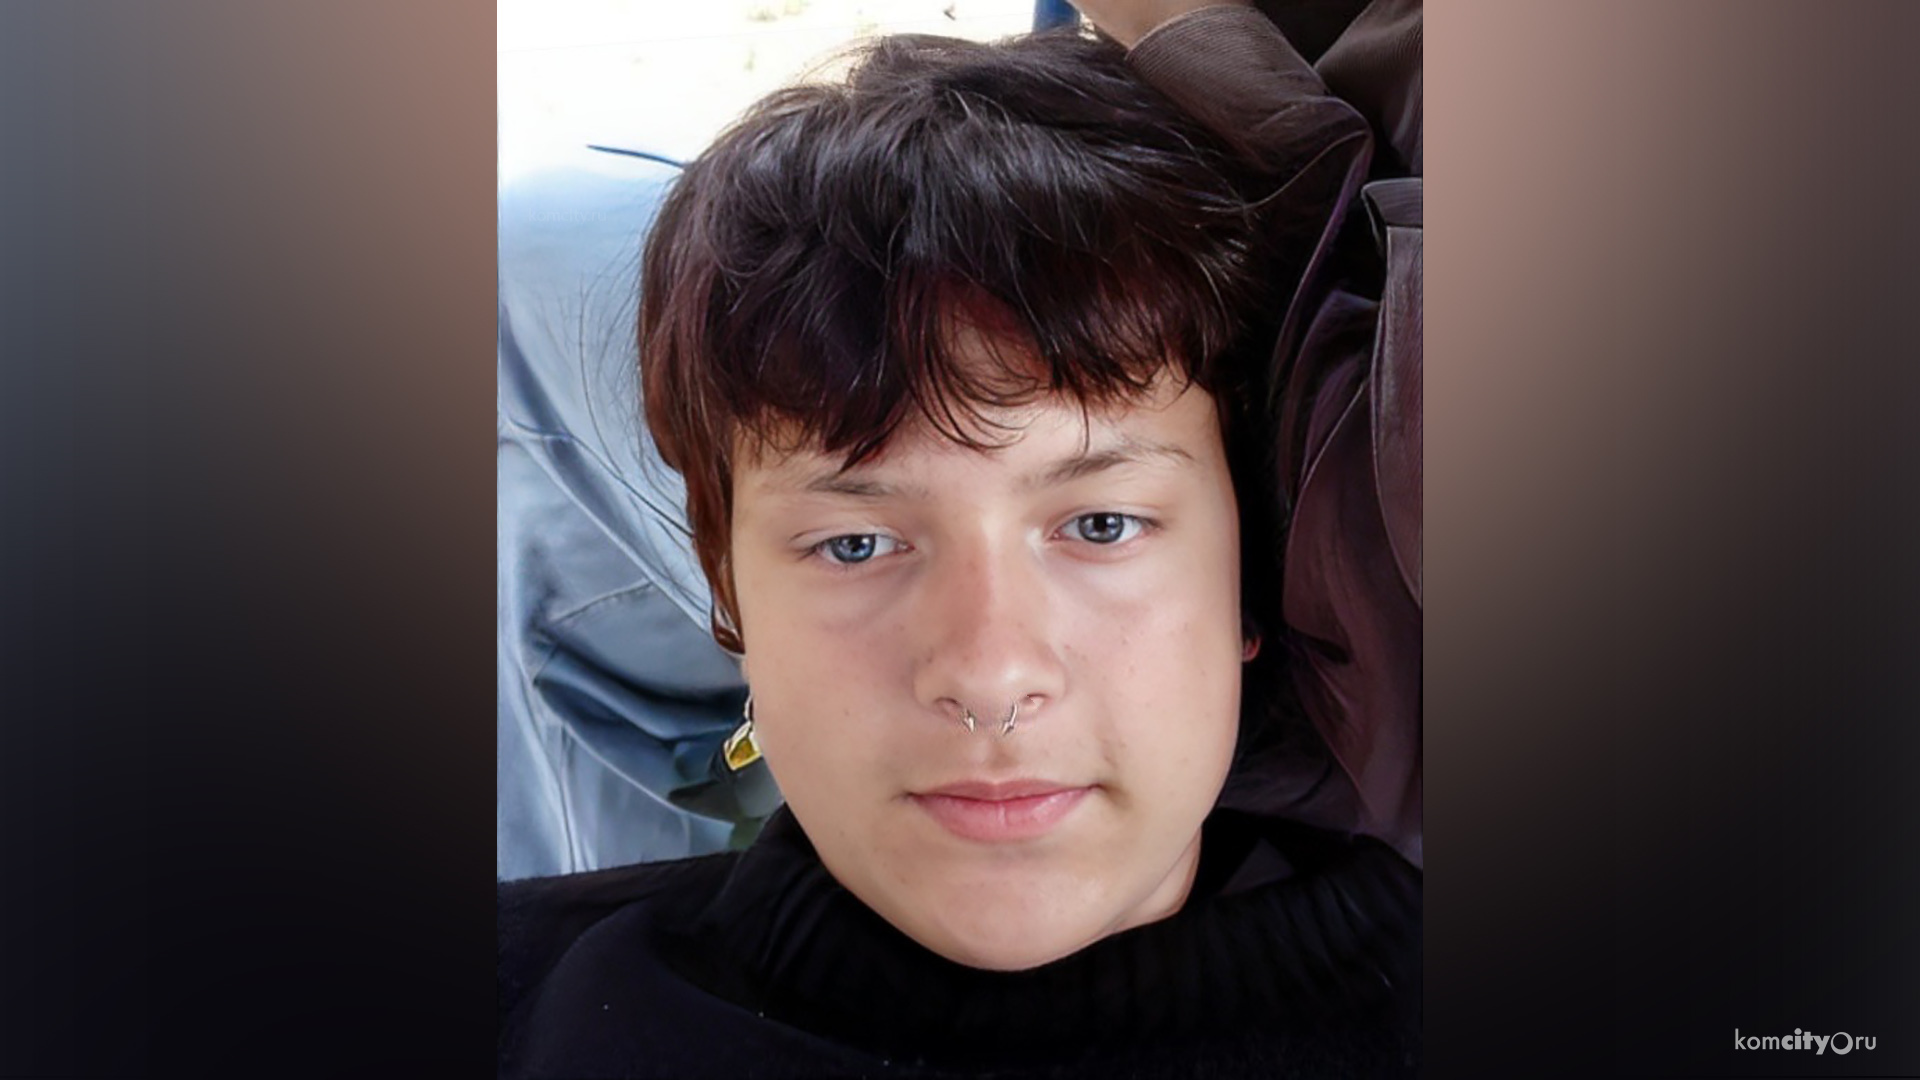 Пропавшего 14-летнего подростка разыскивают в Комсомольске